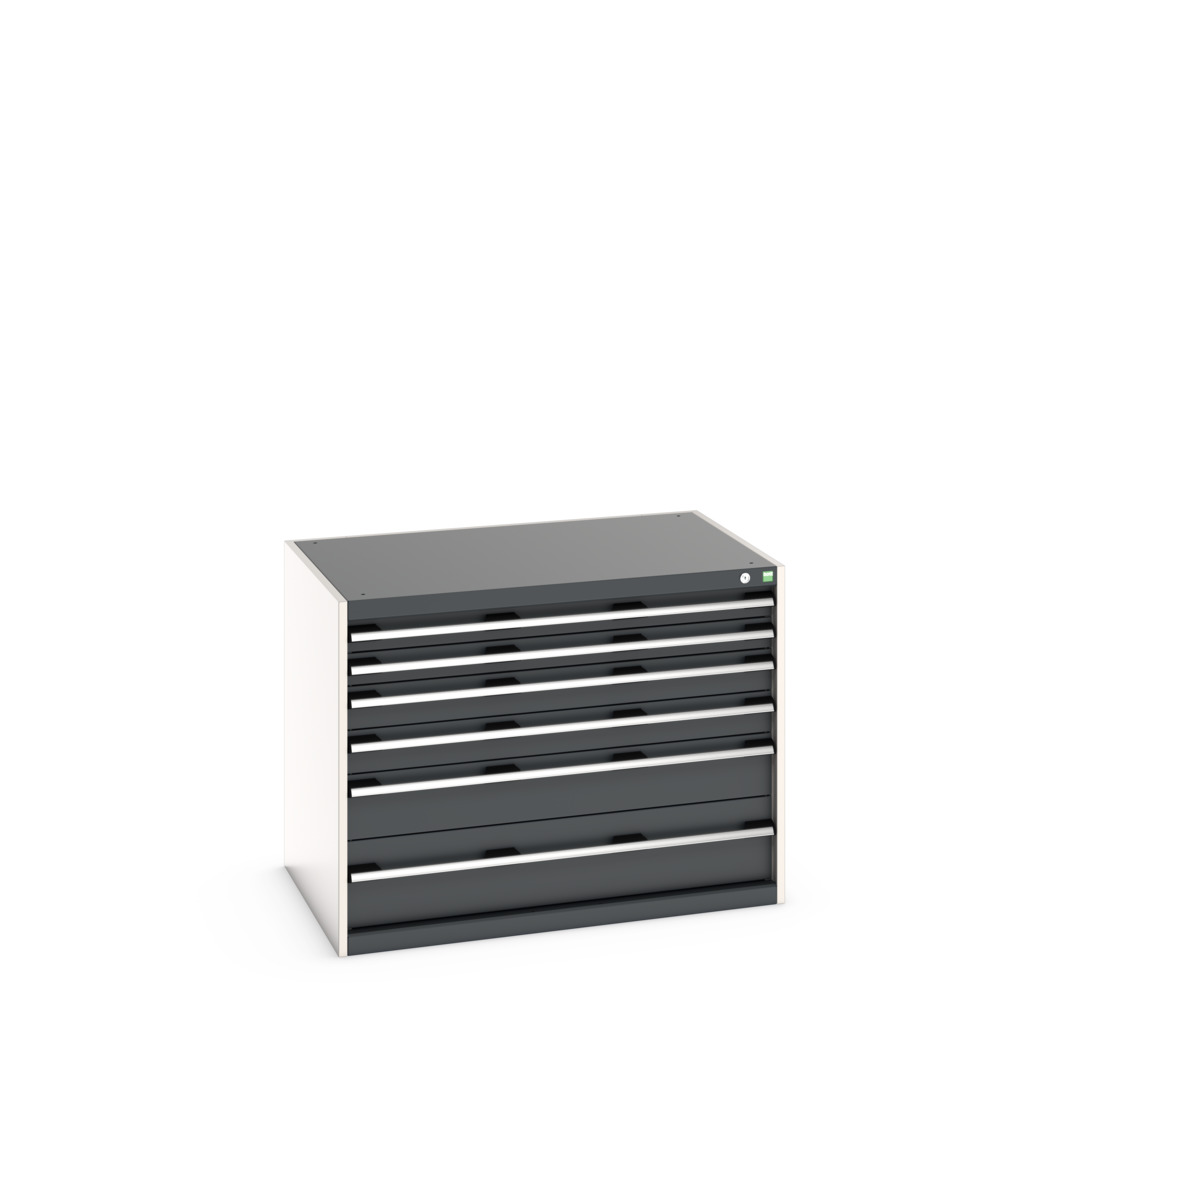 40029085.19V - cubio drawer cabinet